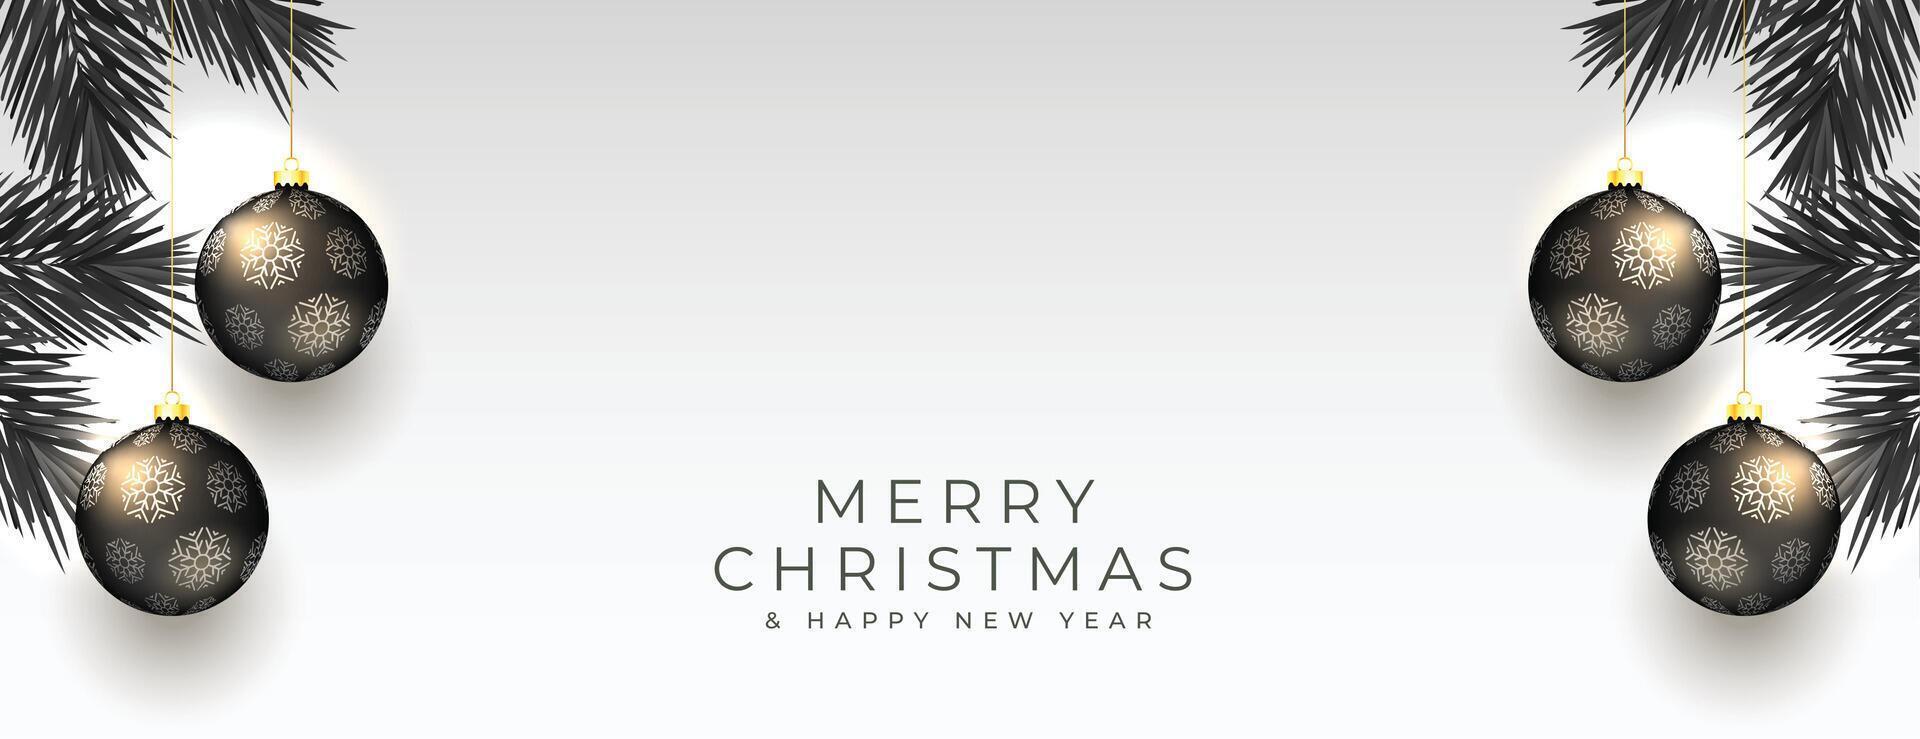 alegre Navidad evento bandera con 3d chuchería en colgando estilo vector